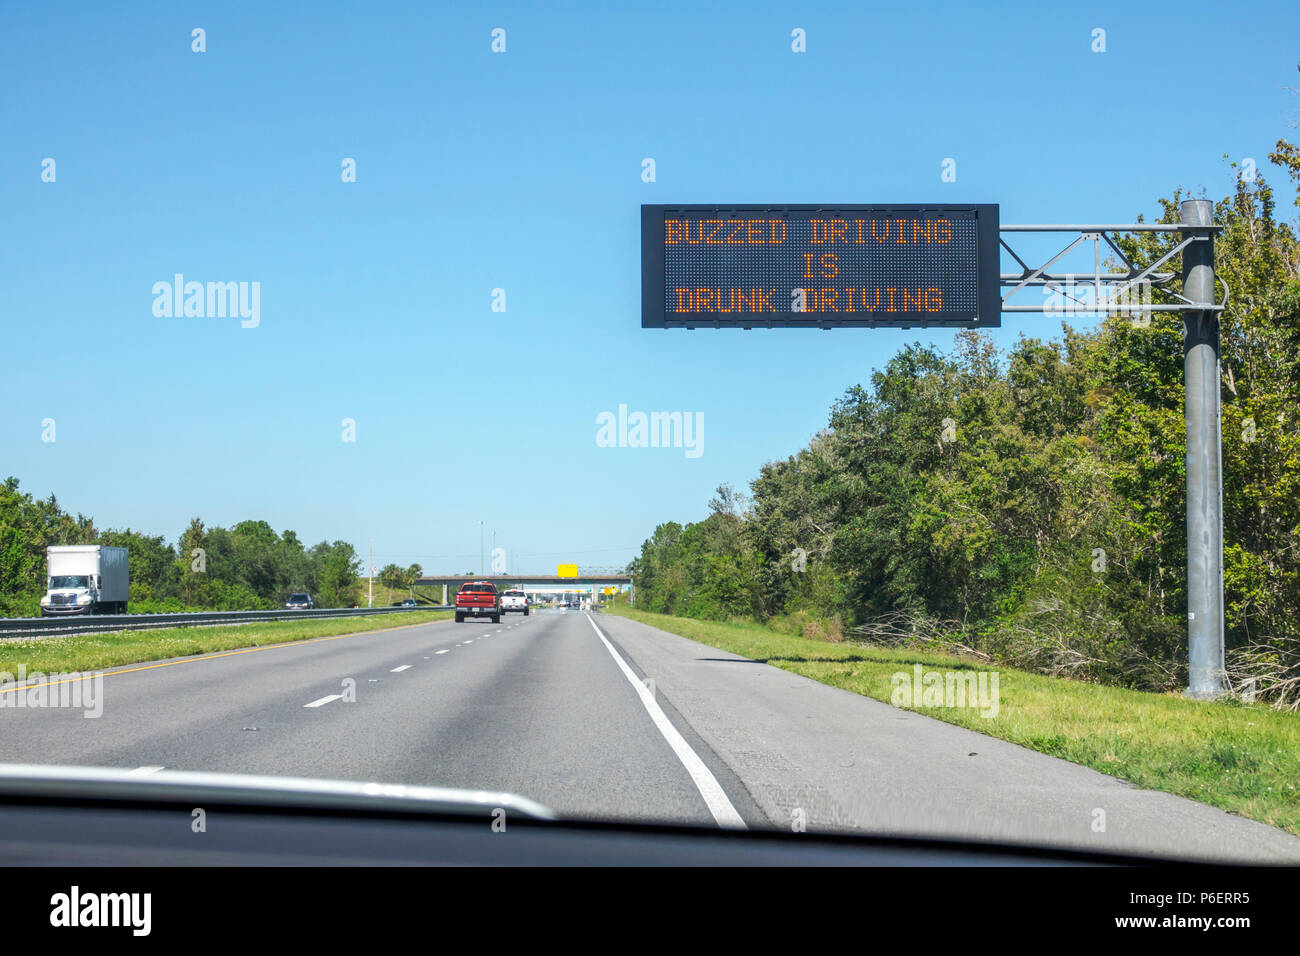 Fort ft. Lauderdale Florida,Florida Turnpike route à péage,panneau de message électronique,conduite en état d'ivresse,FL171028016 Banque D'Images